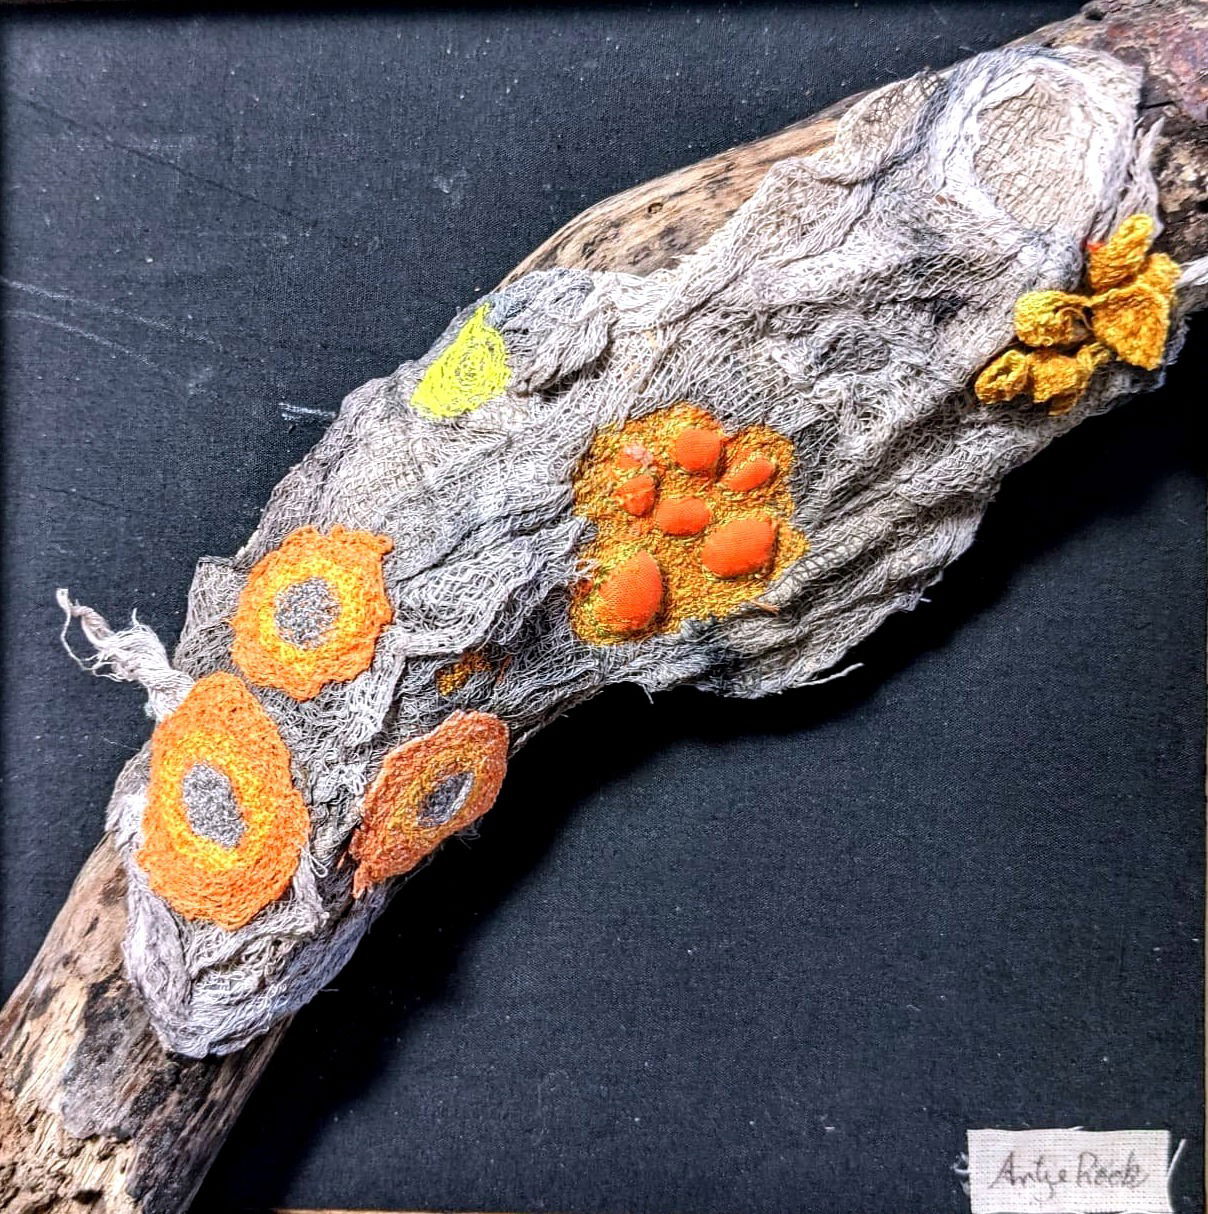 Moss and lichen, orange